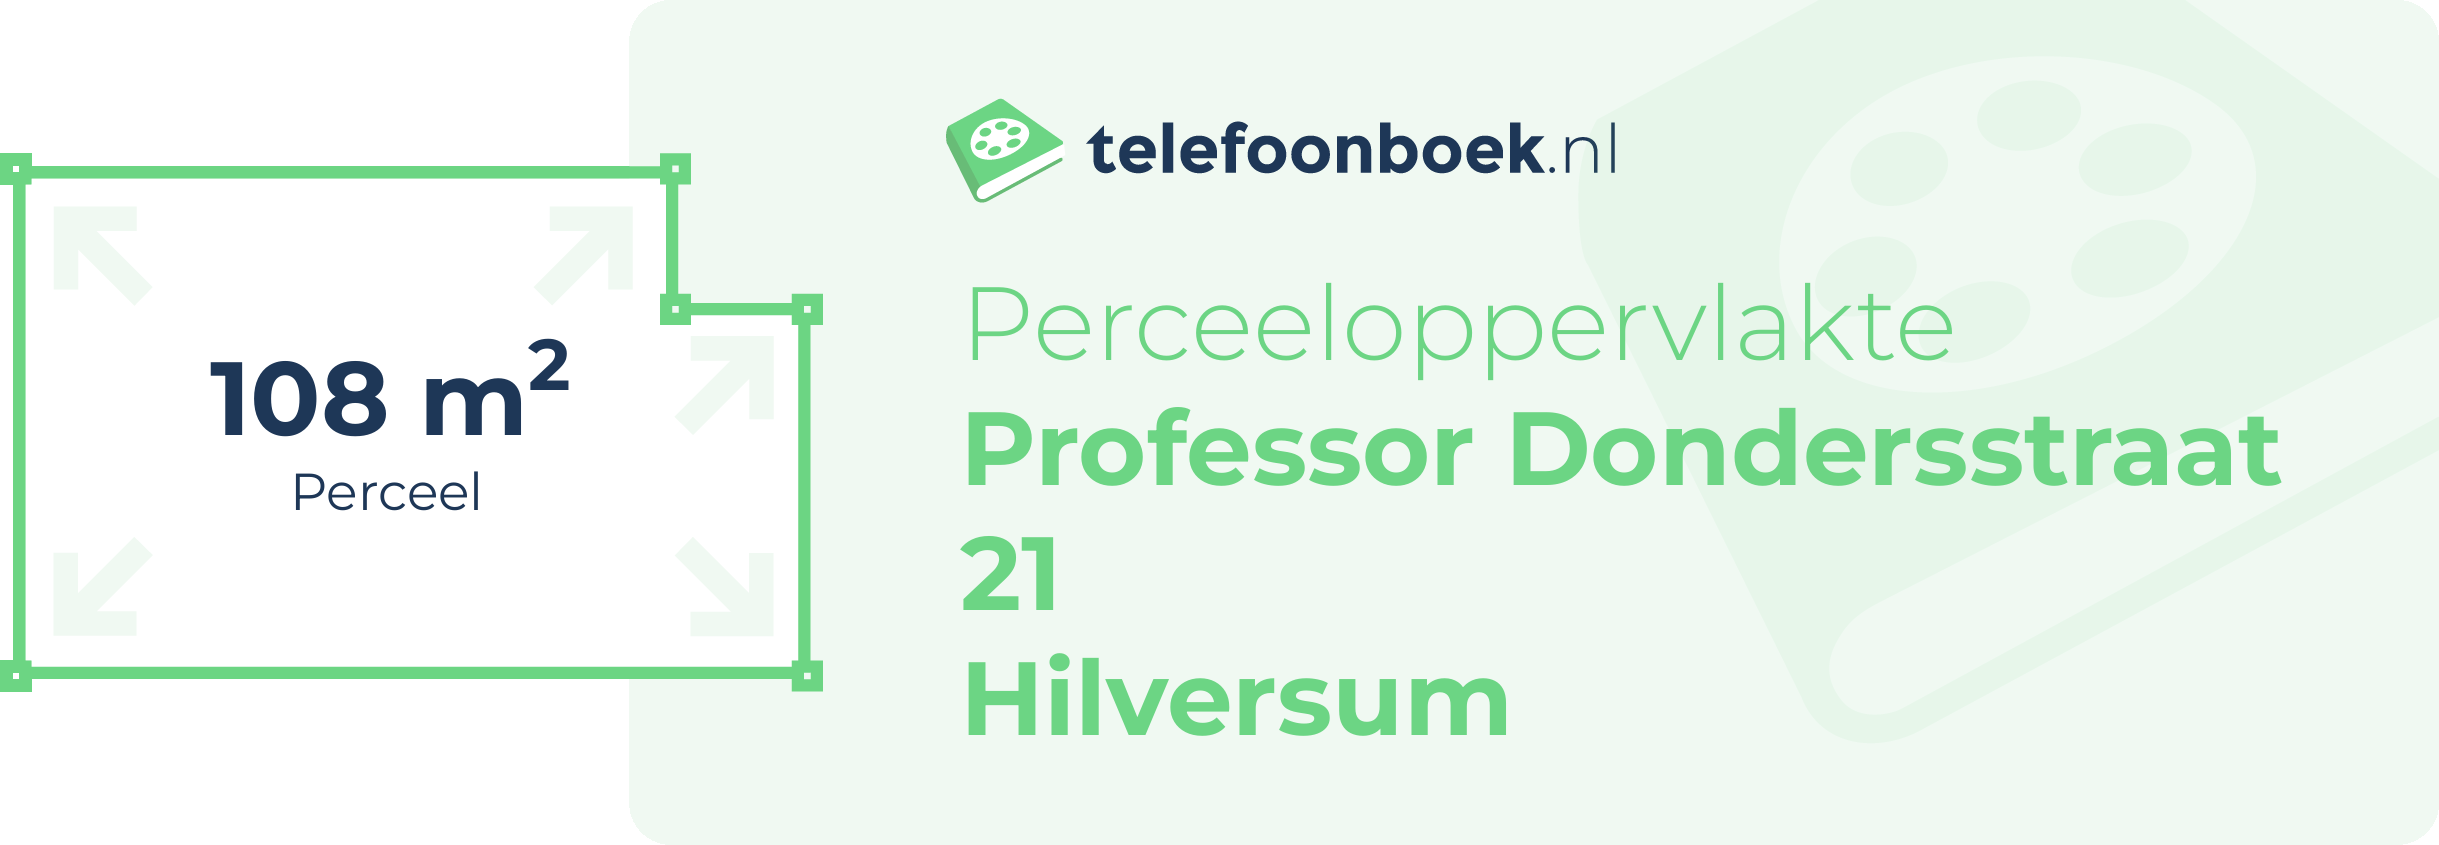 Perceeloppervlakte Professor Dondersstraat 21 Hilversum